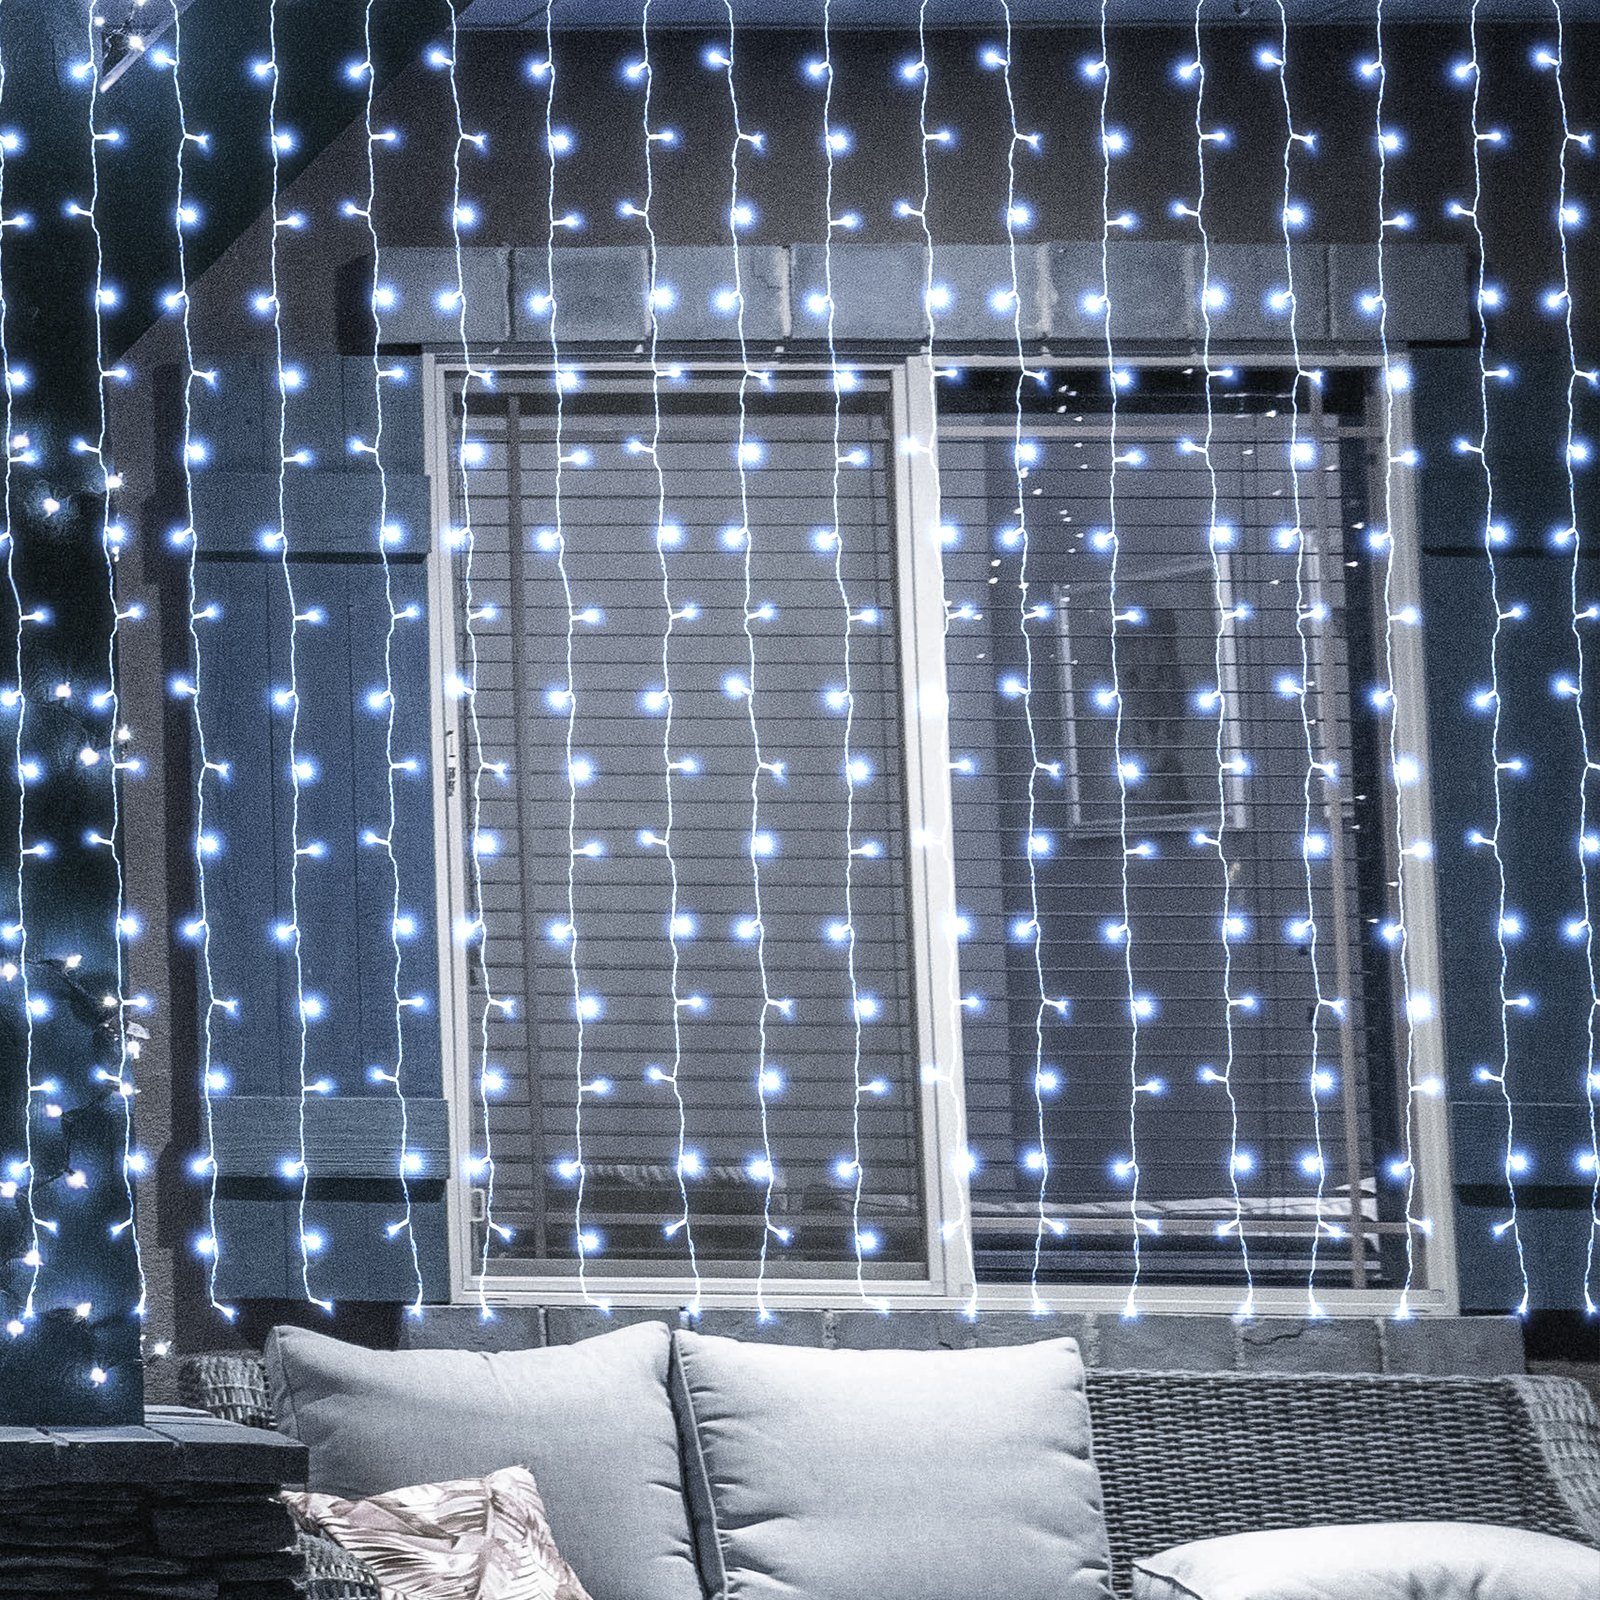 Salcar LED-Lichterkette 3m/6m LED Lichtvorhang Weihnachten Lichterkette 8 Beleuchtungsmodi Kaltweiß